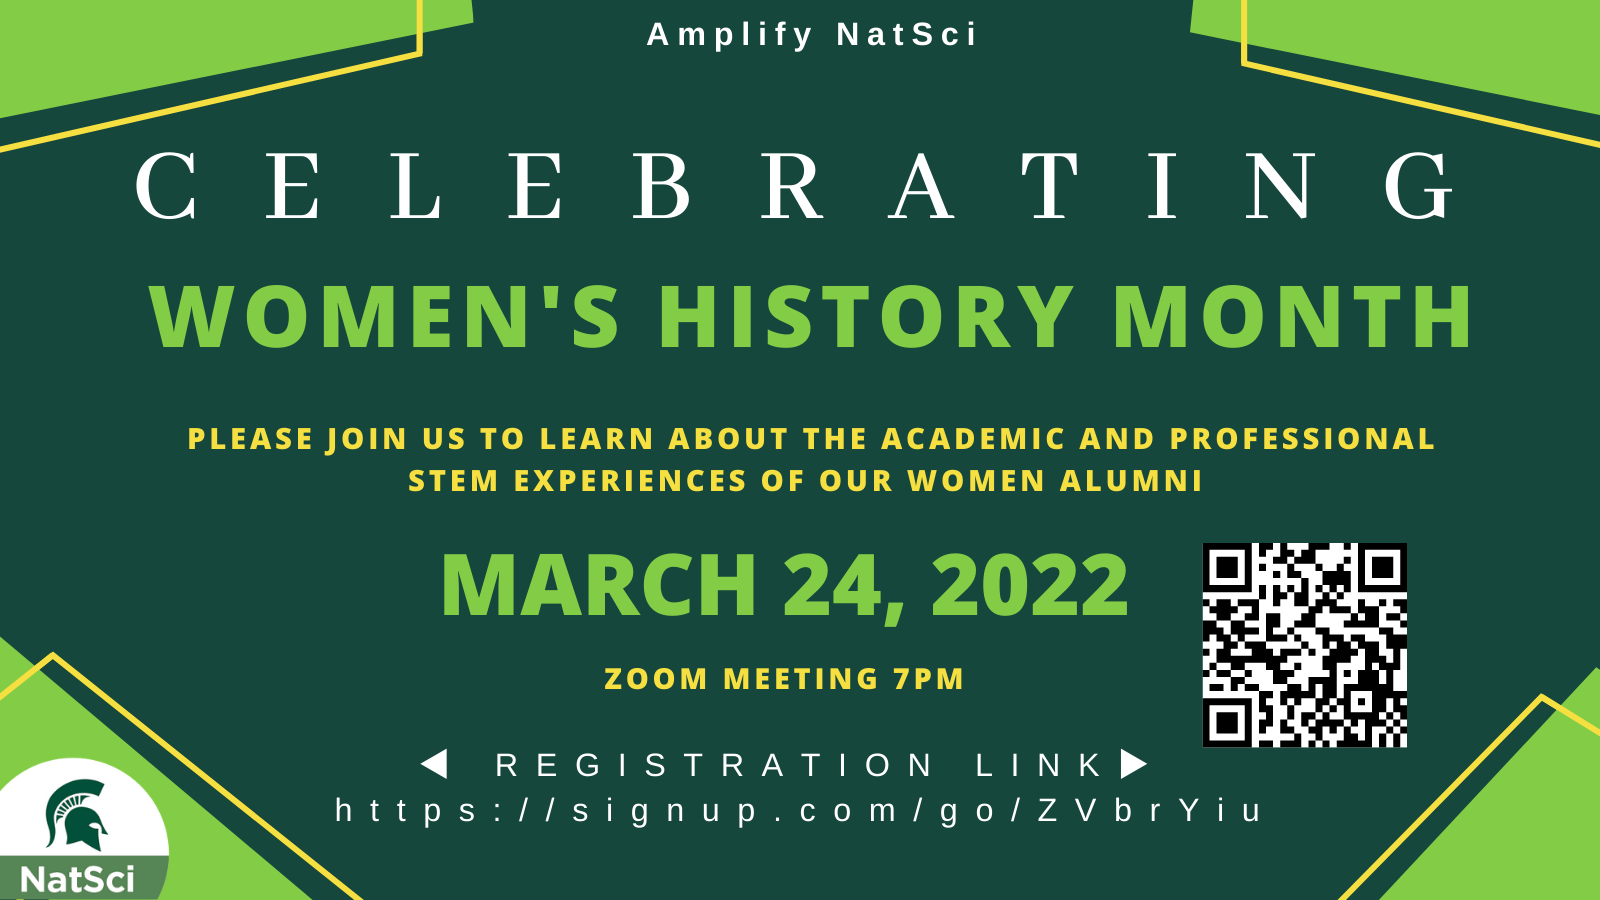 Women's History Month Amplify NatSci